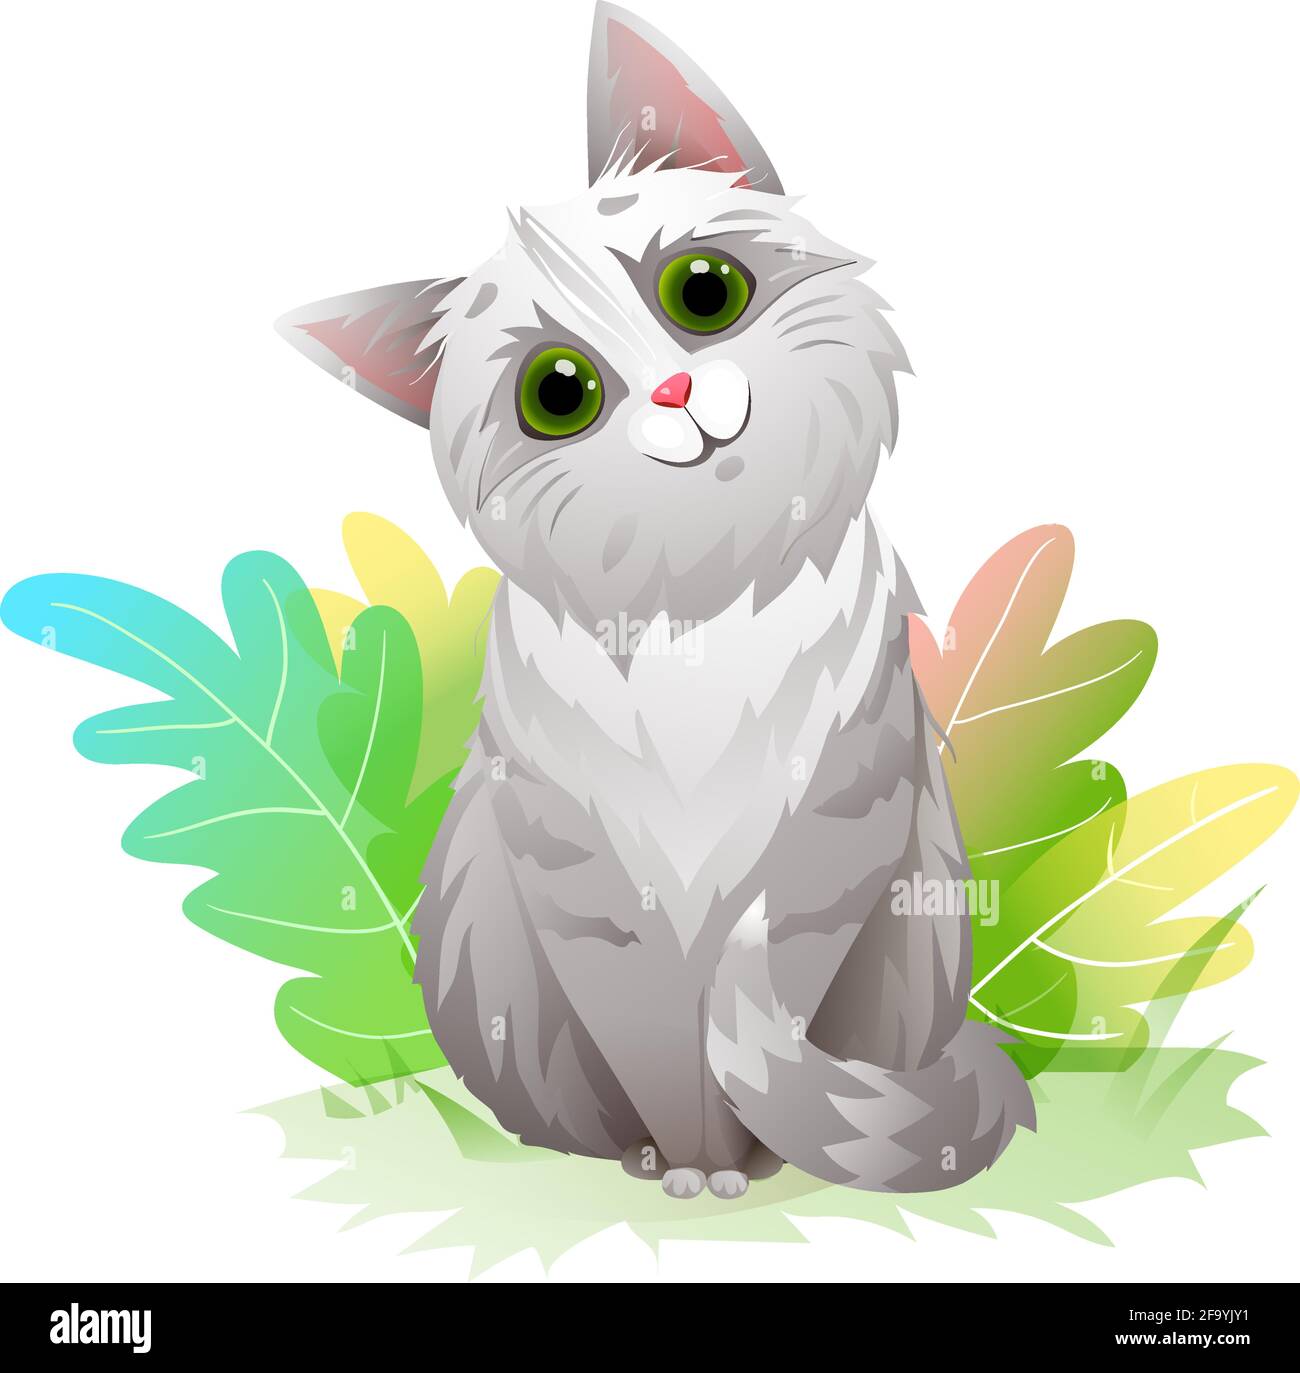 Adorable et amusant chat ou chaton dans la mascotte nature Illustration de Vecteur